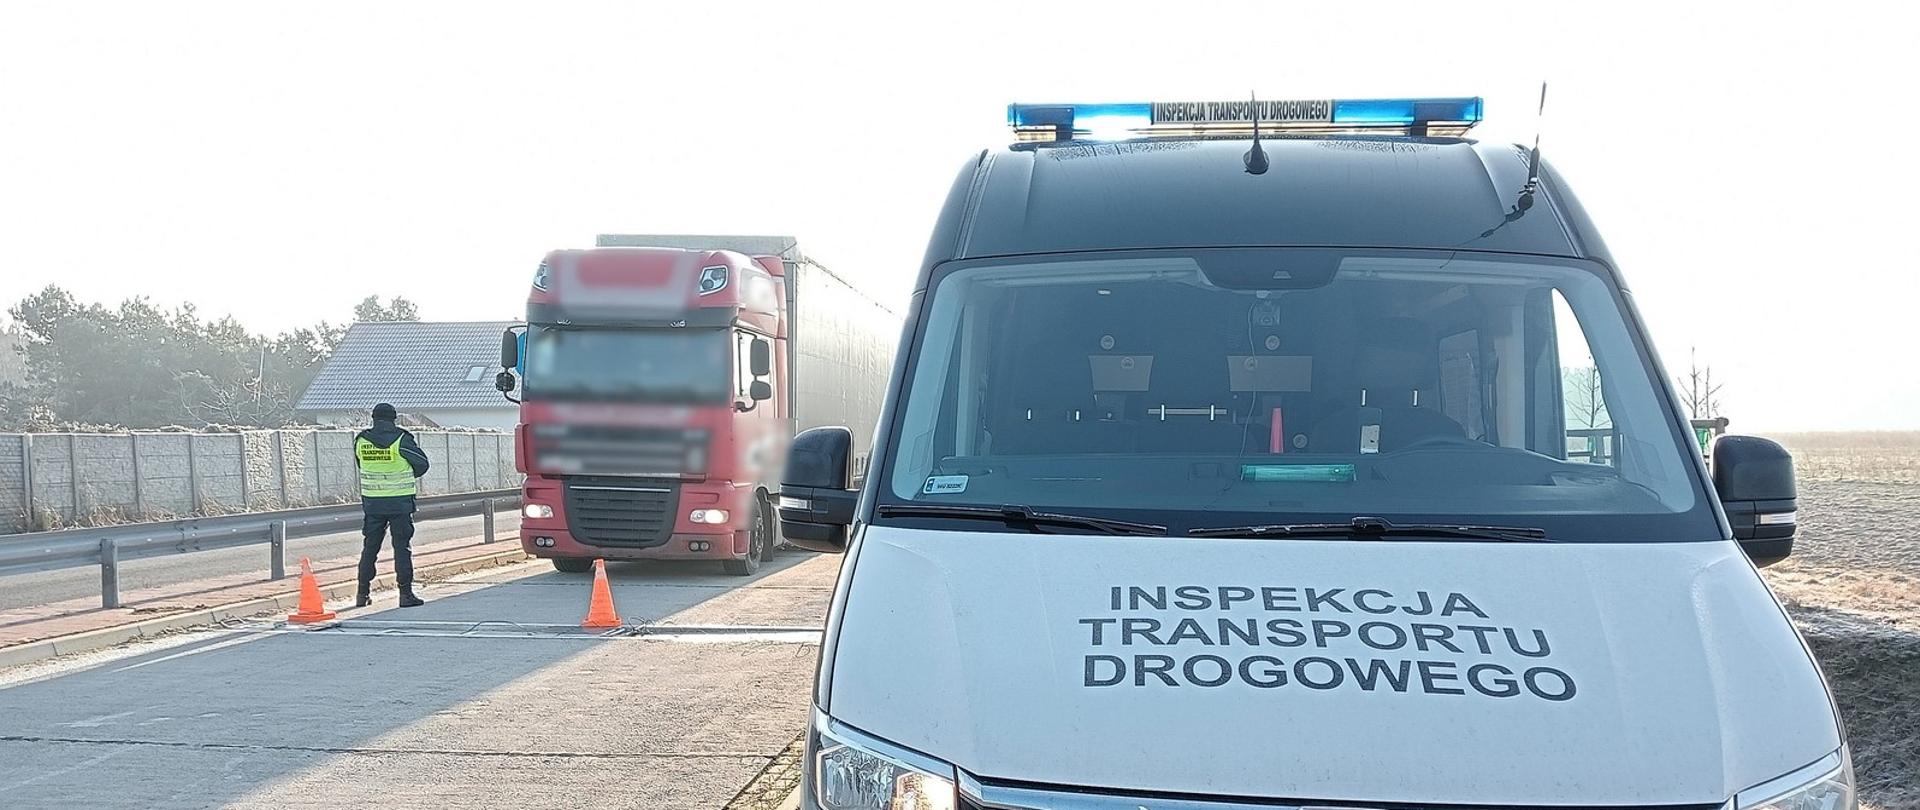 Zły stan opony w naczepie ciężarowej stwierdzili inspektorzy z Leszna 